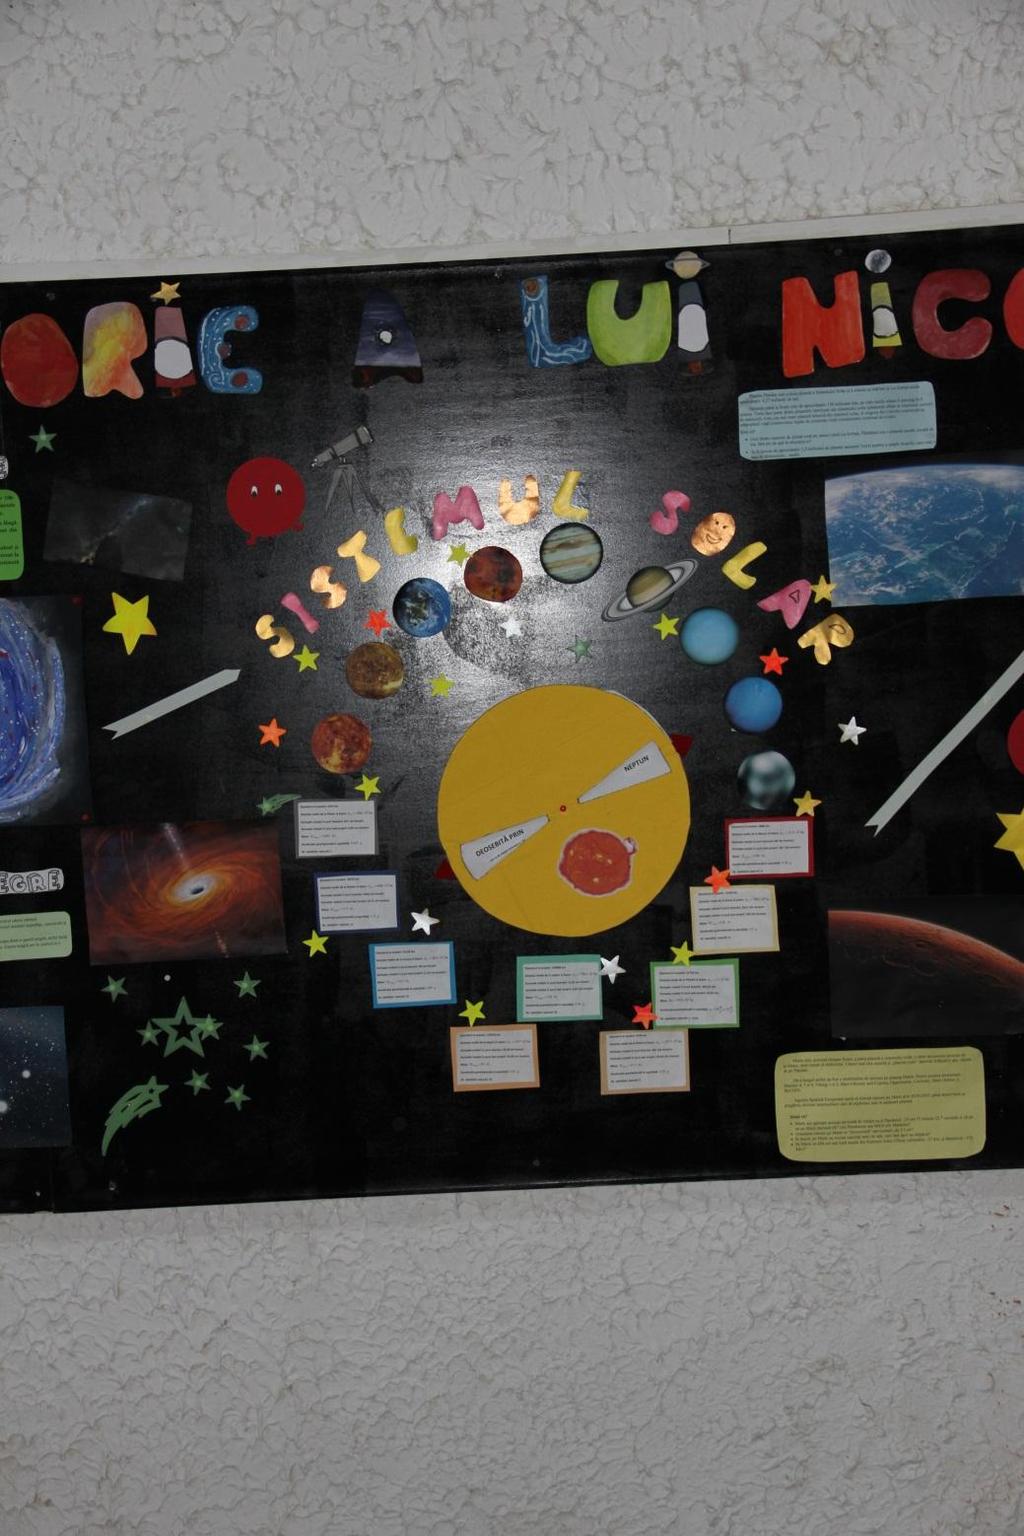 Acest sector este unul interactiv, cu informații despre Sistemul Solar și fiecare planetă în parte.